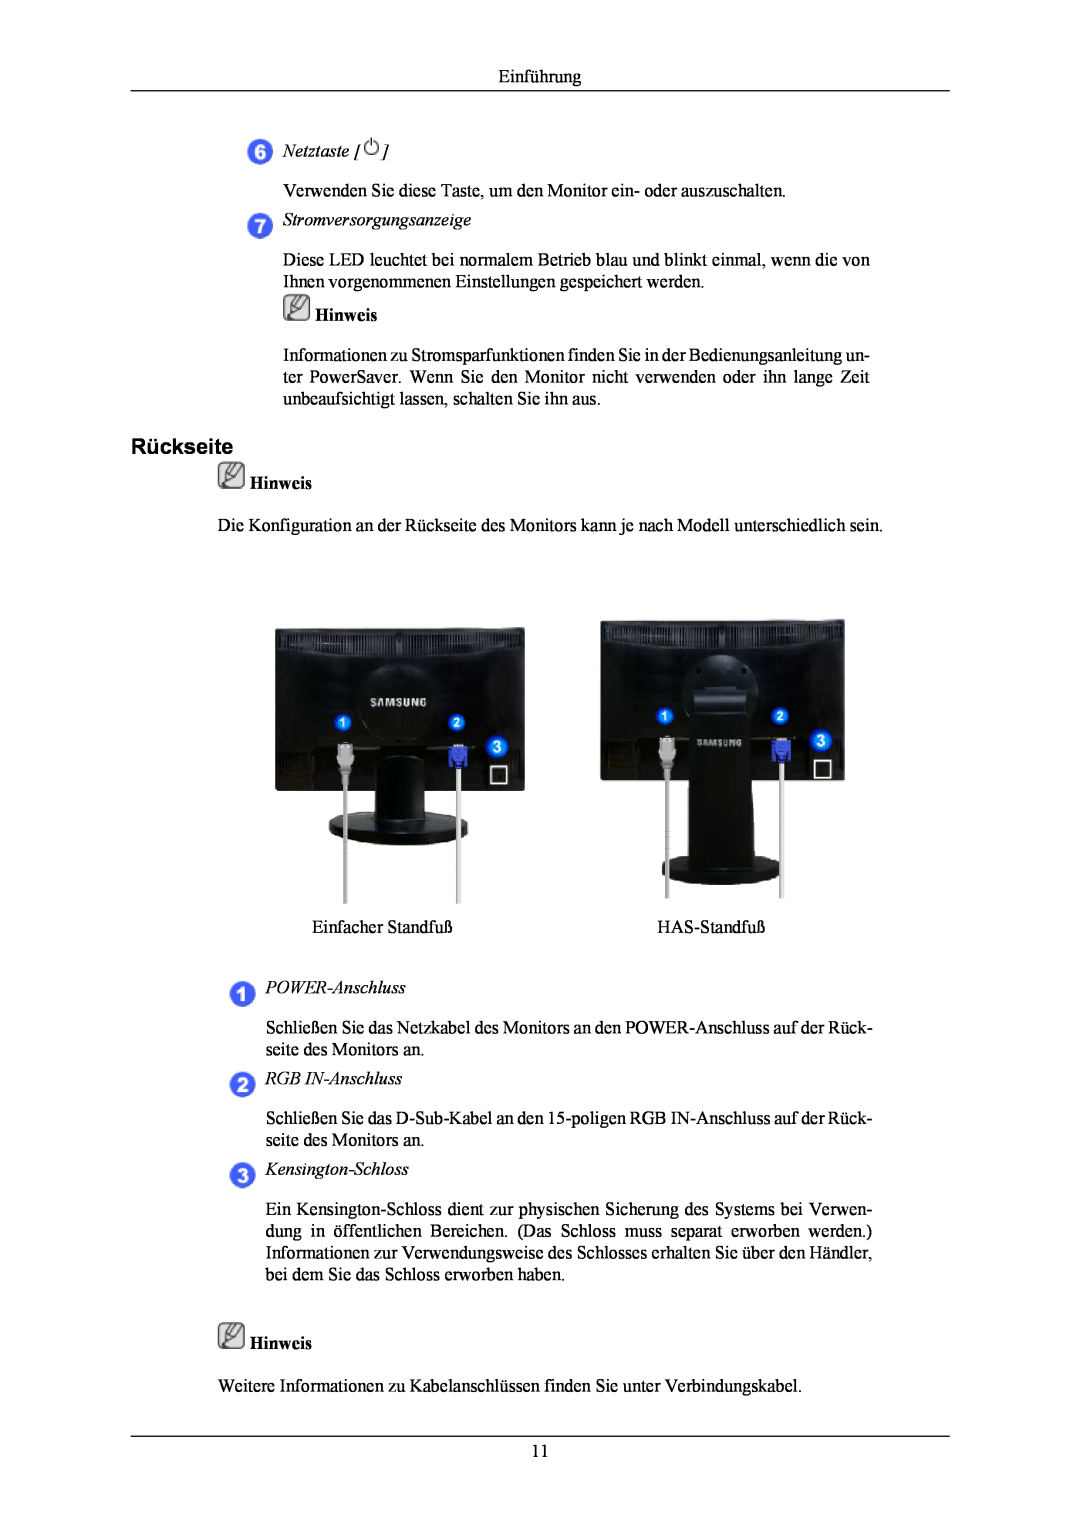 Samsung LS20MYNKBBHEDC manual Rückseite, Netztaste, Stromversorgungsanzeige, POWER-Anschluss, RGB IN-Anschluss, Hinweis 